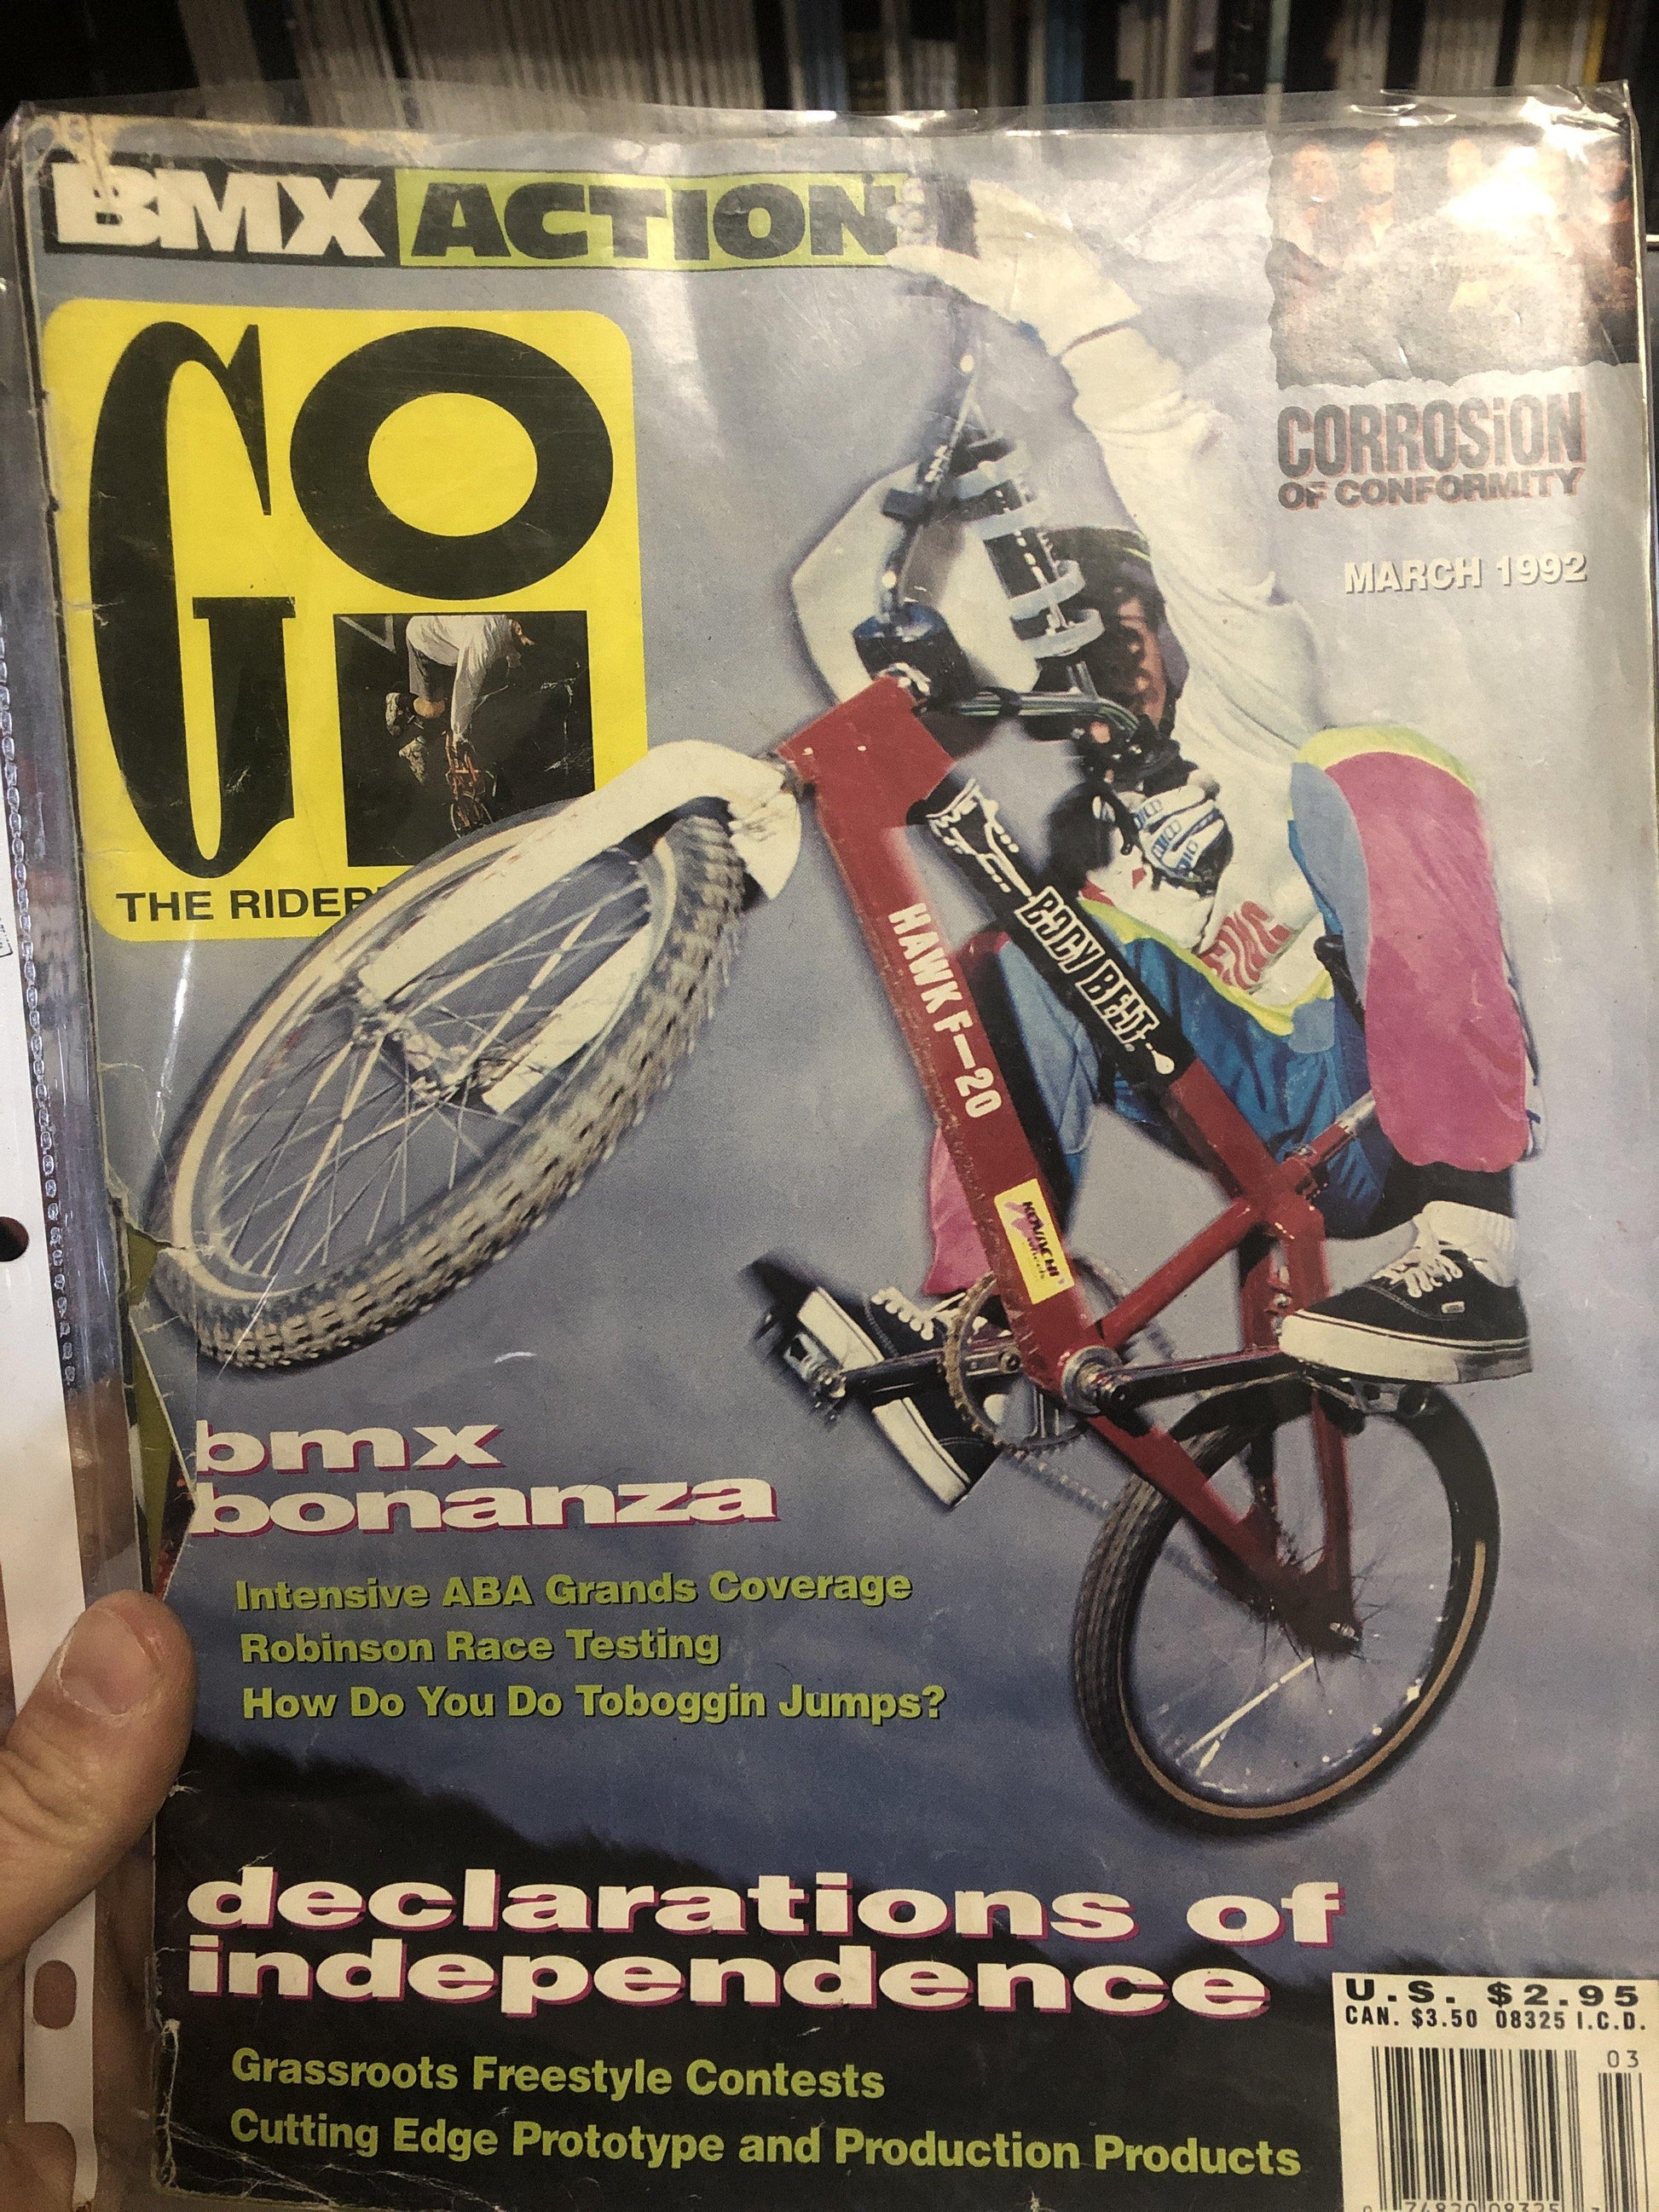 Go bmx magazine 1992 back issues - POWERS BMX